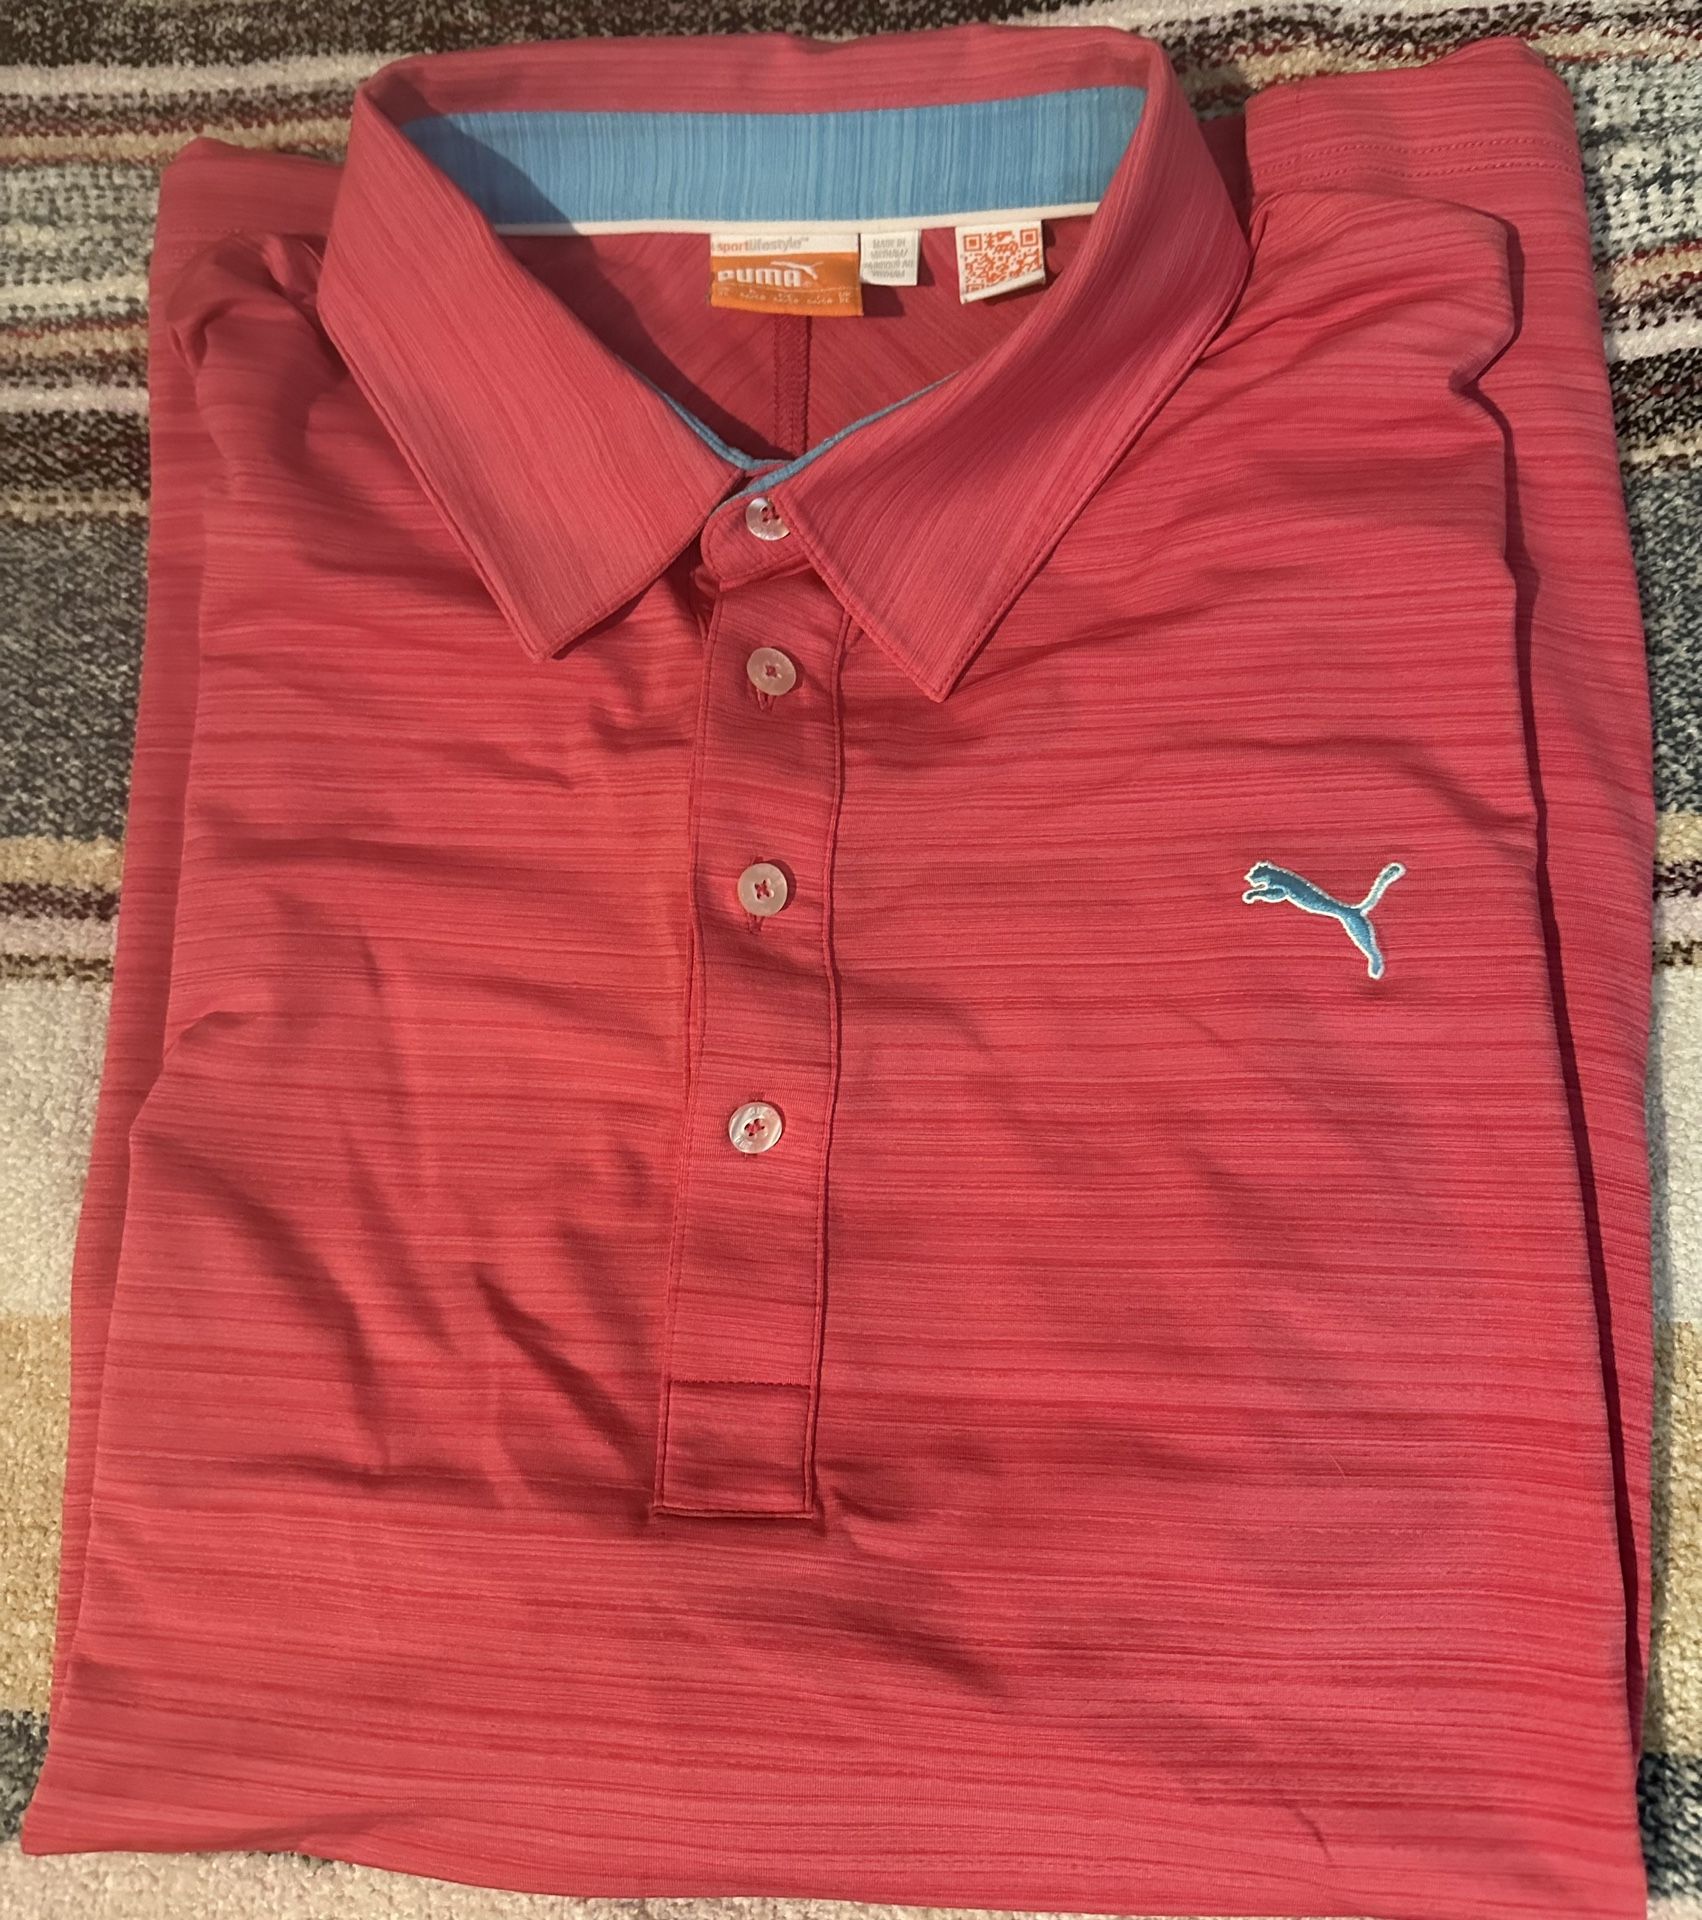 Puma Golf Men’s Shirt Size XL